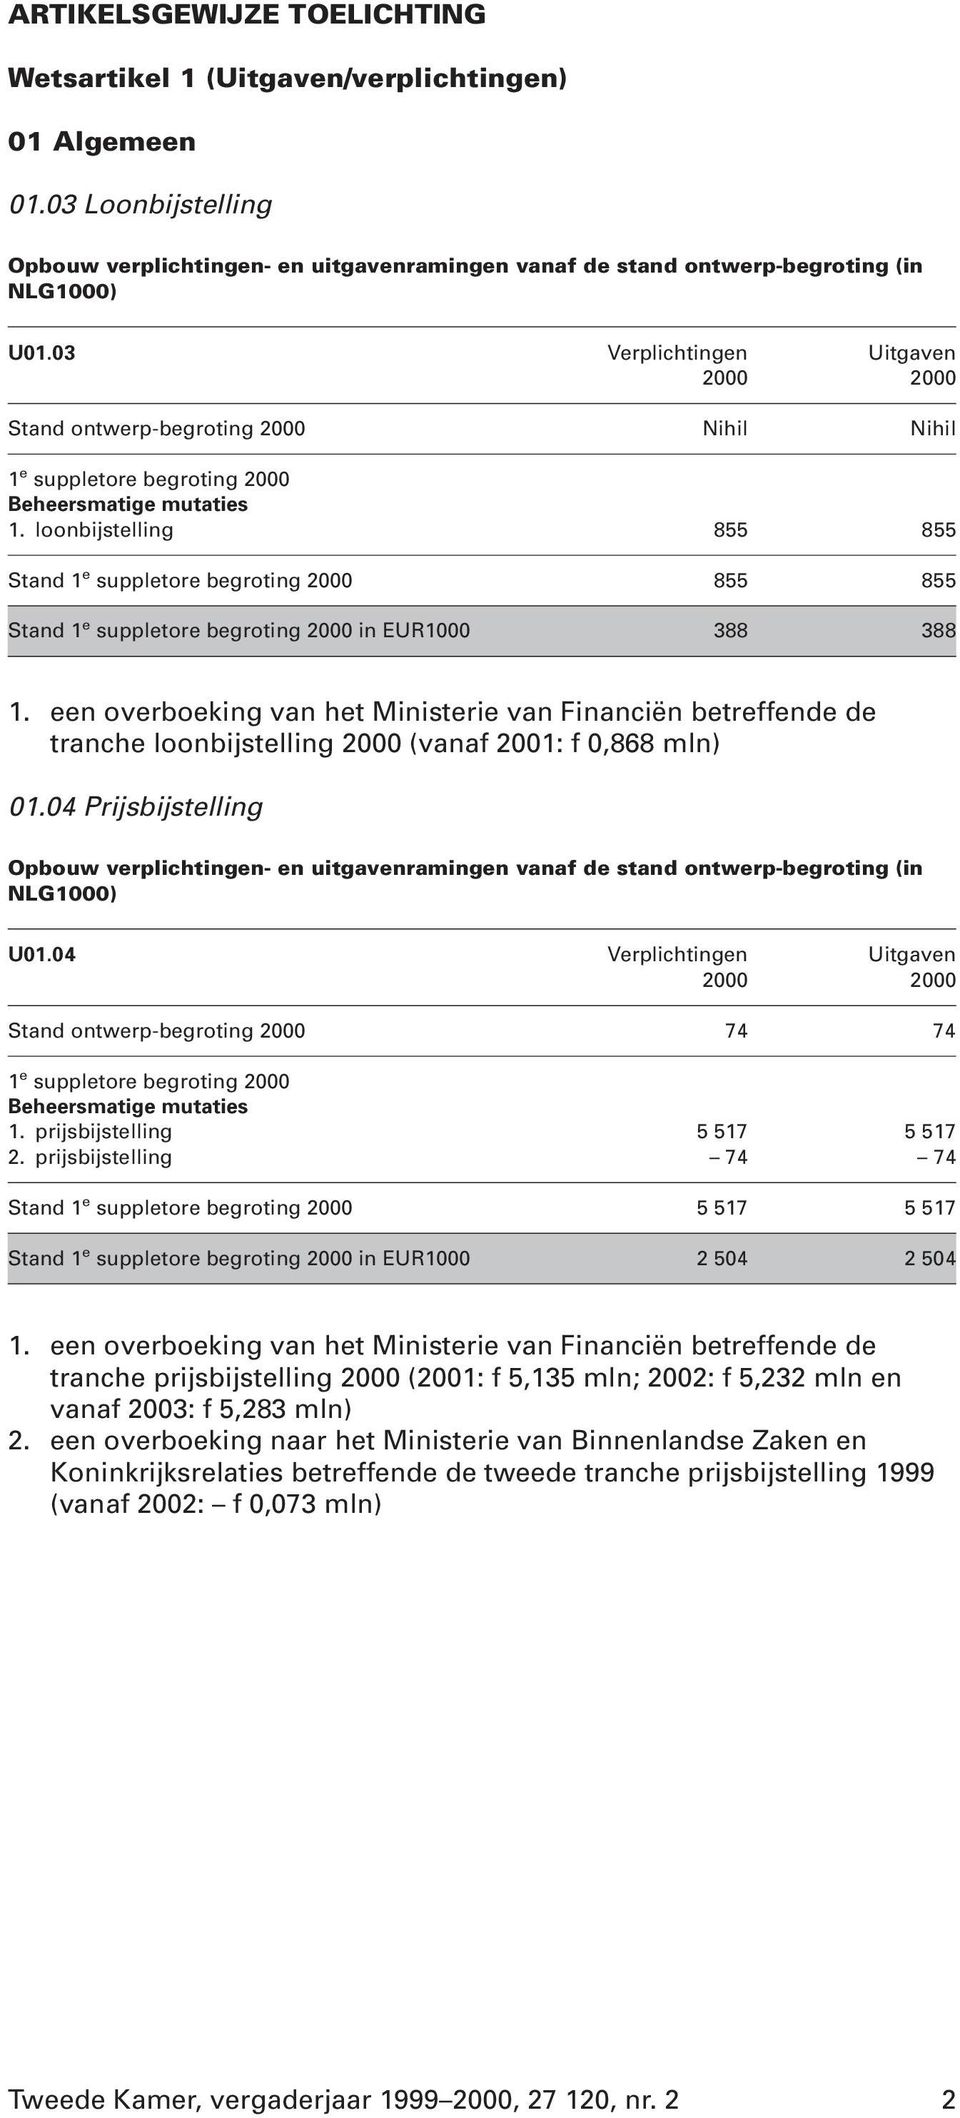 een overboeking van het Ministerie van Financiën betreffende de tranche loonbijstelling (vanaf 2001: f 0,868 mln) 01.04 Prijsbijstelling U01.